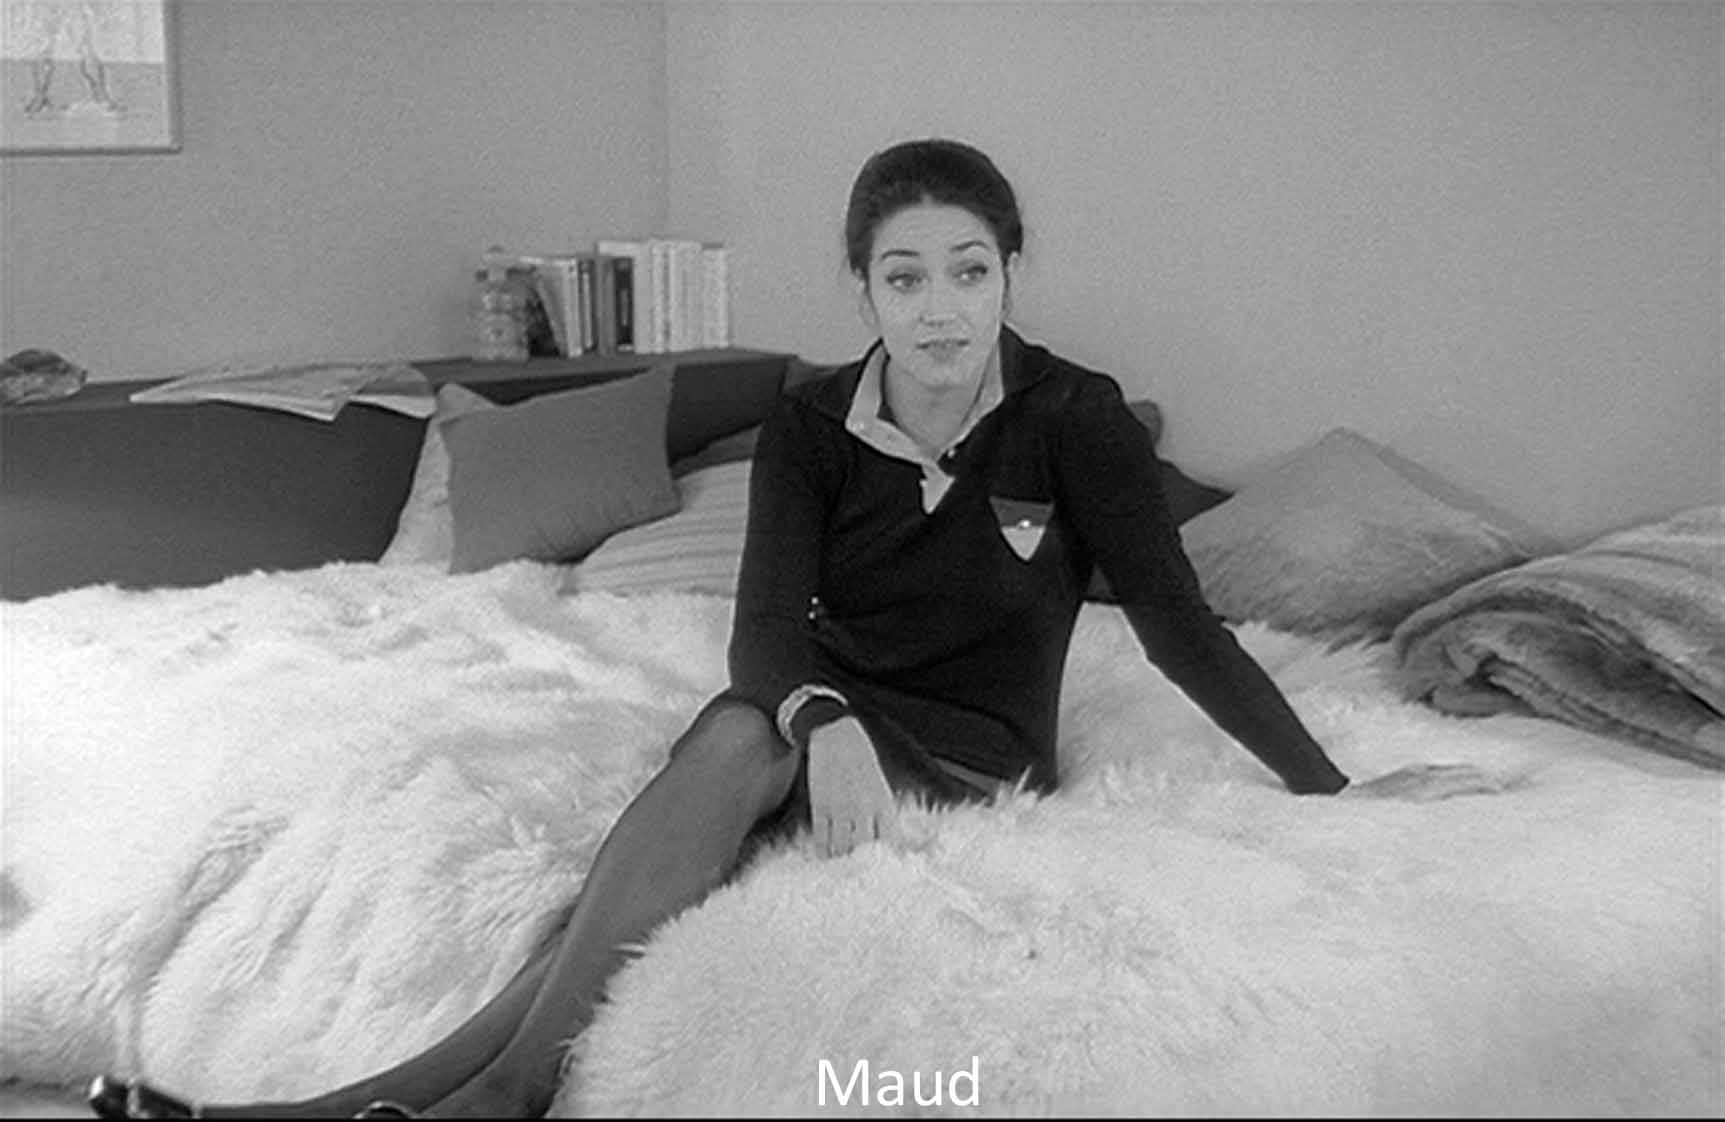  Maud